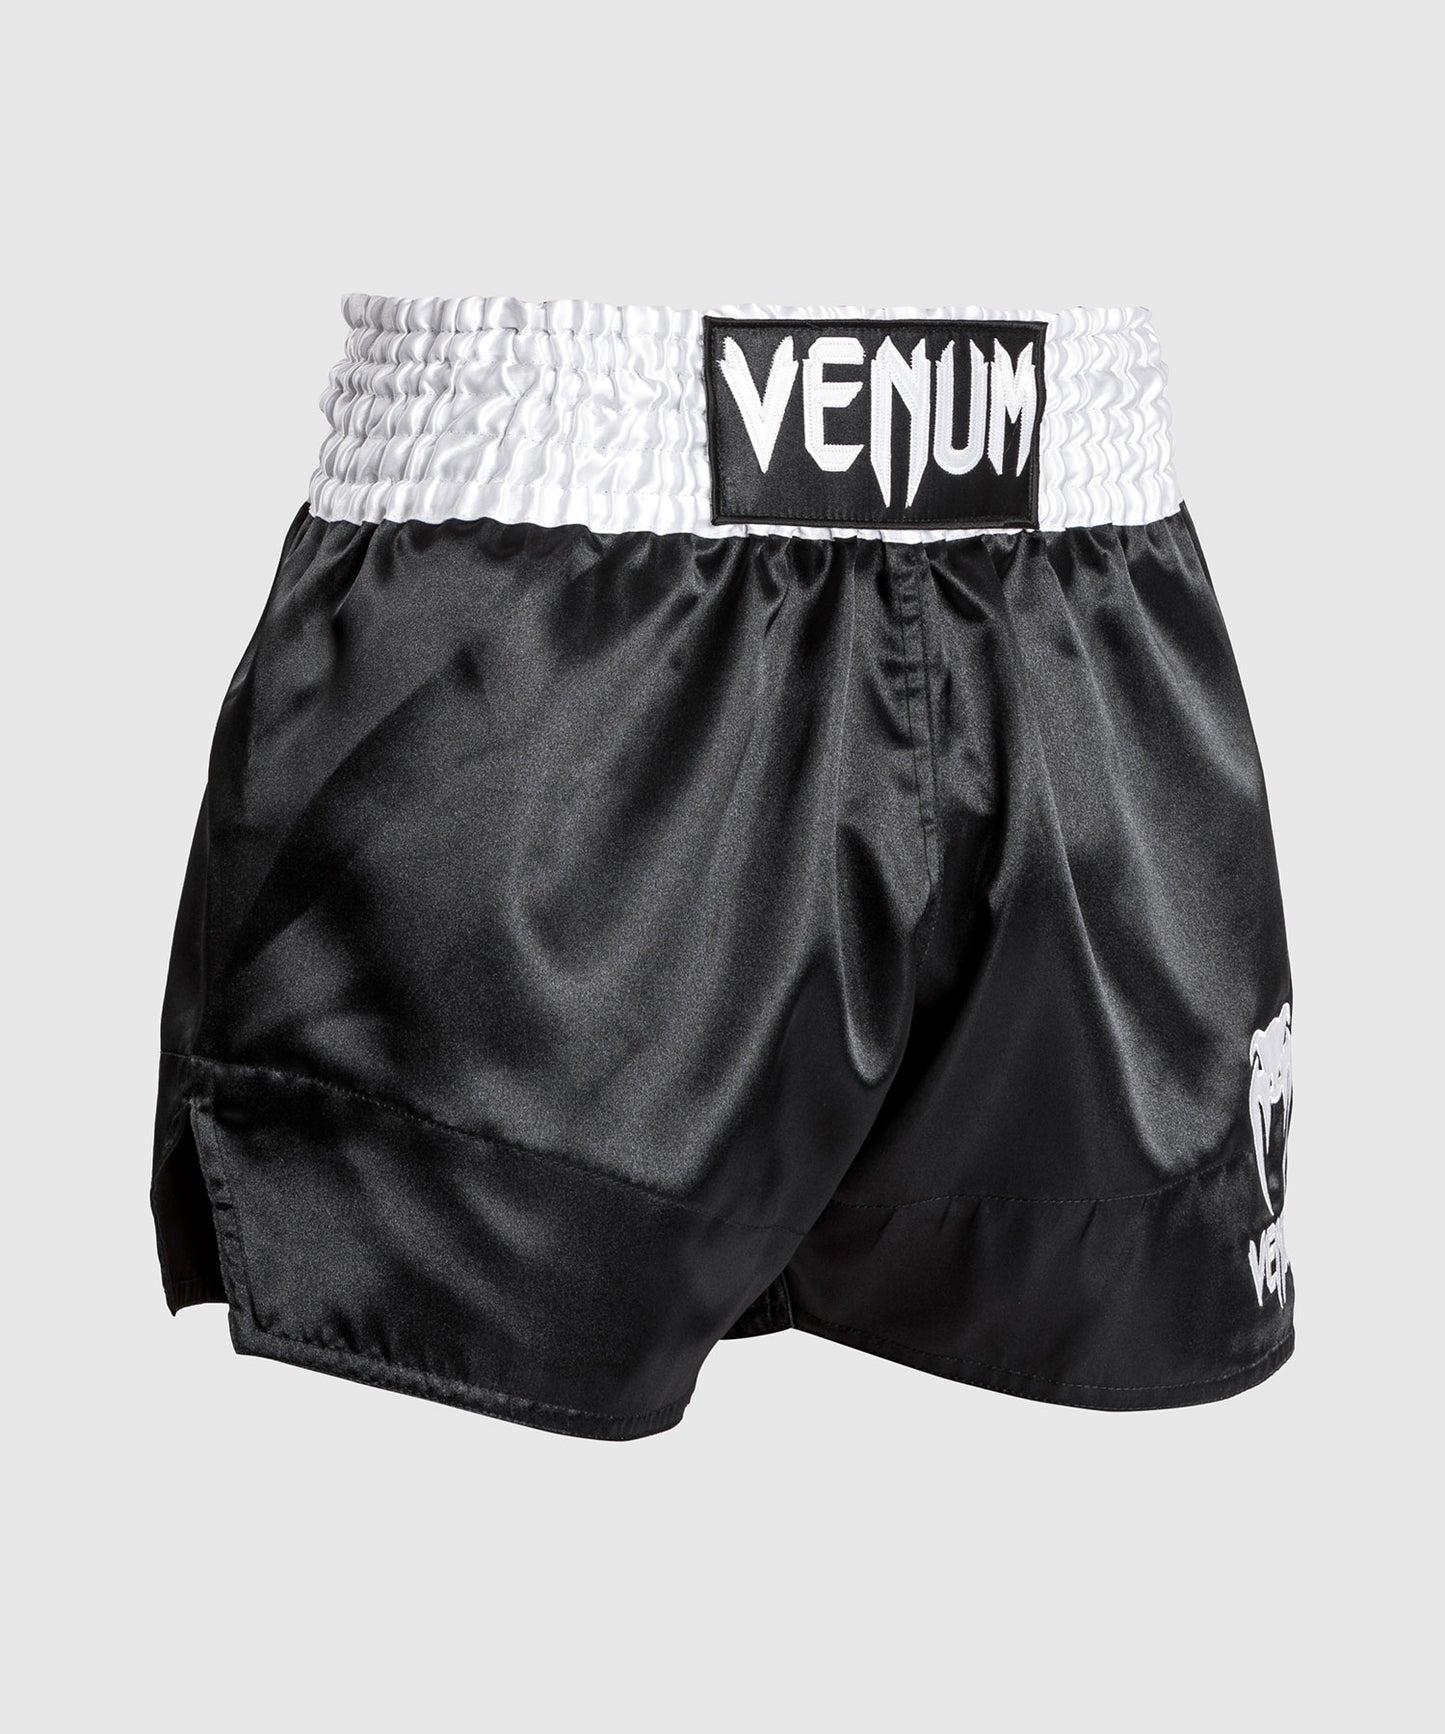 Venum Classic - Muay Thai Shorts Weiß/Schwarz/Weiß